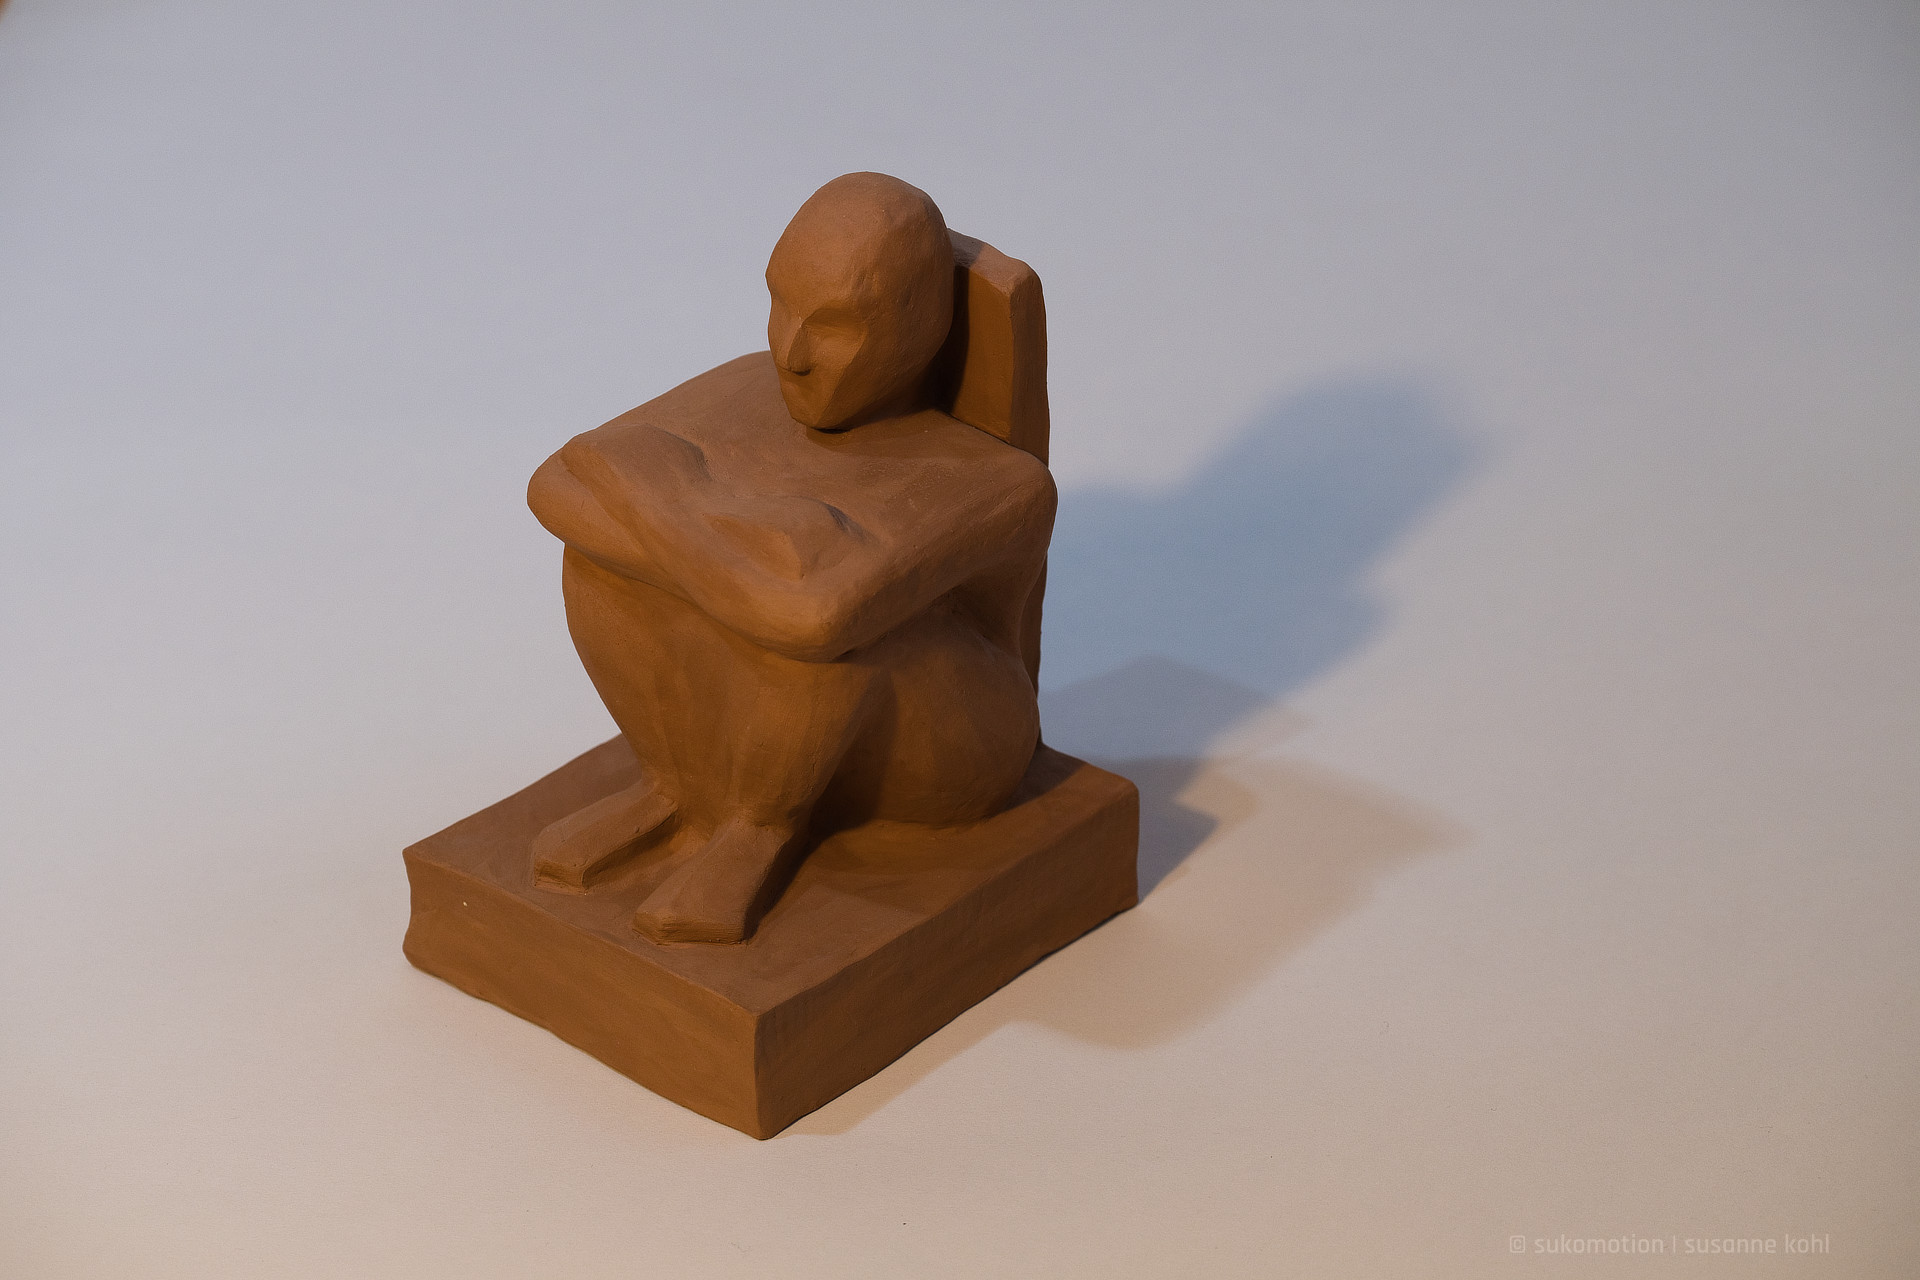 würfelhocker - eine skulptur aus ton - sukomotion | susanne kohl - Berlin